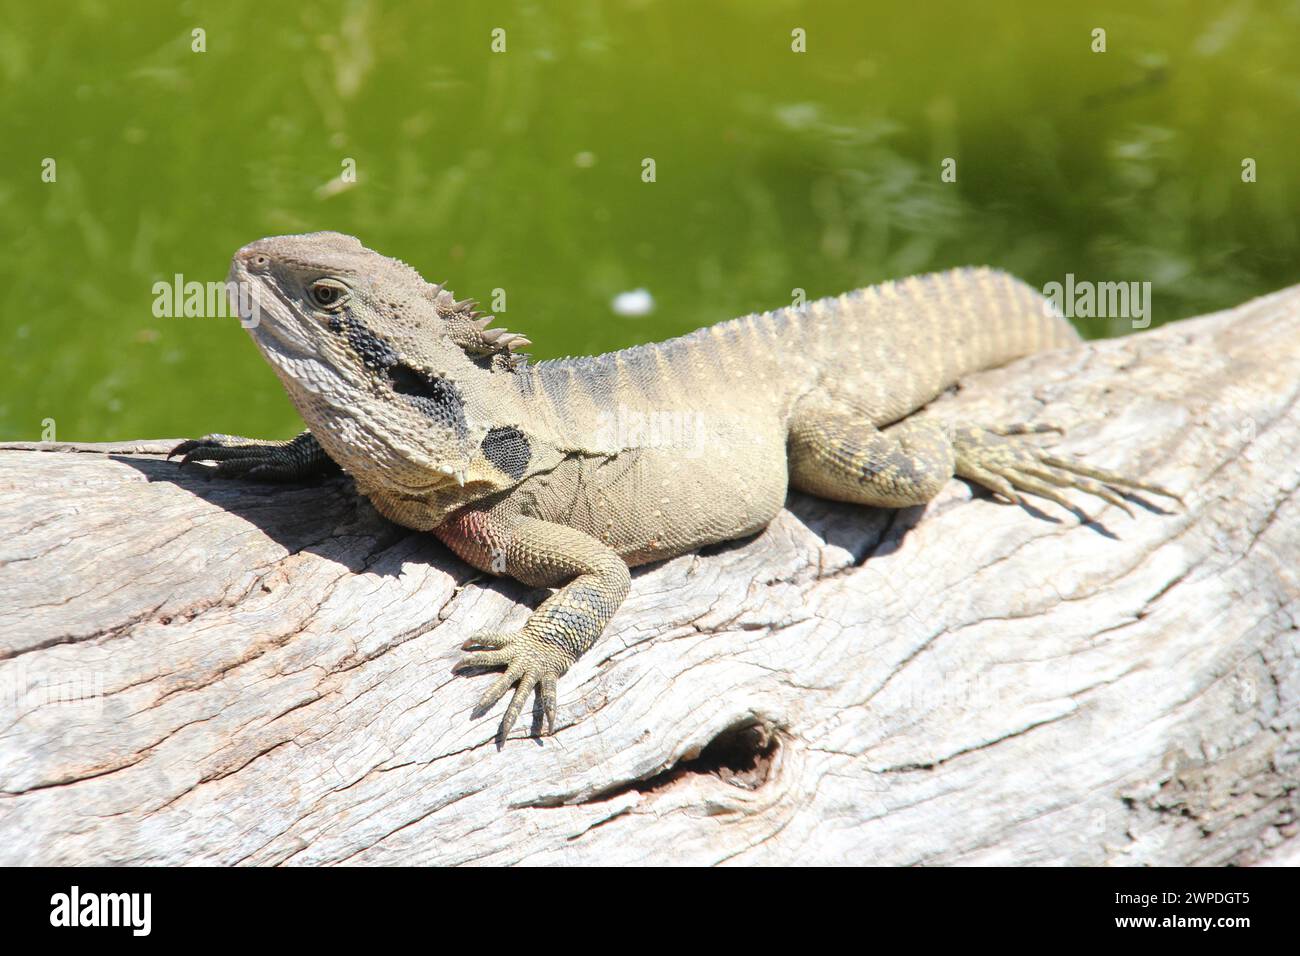 lizard in a zoo in kangaroo island in australia Stock Photo